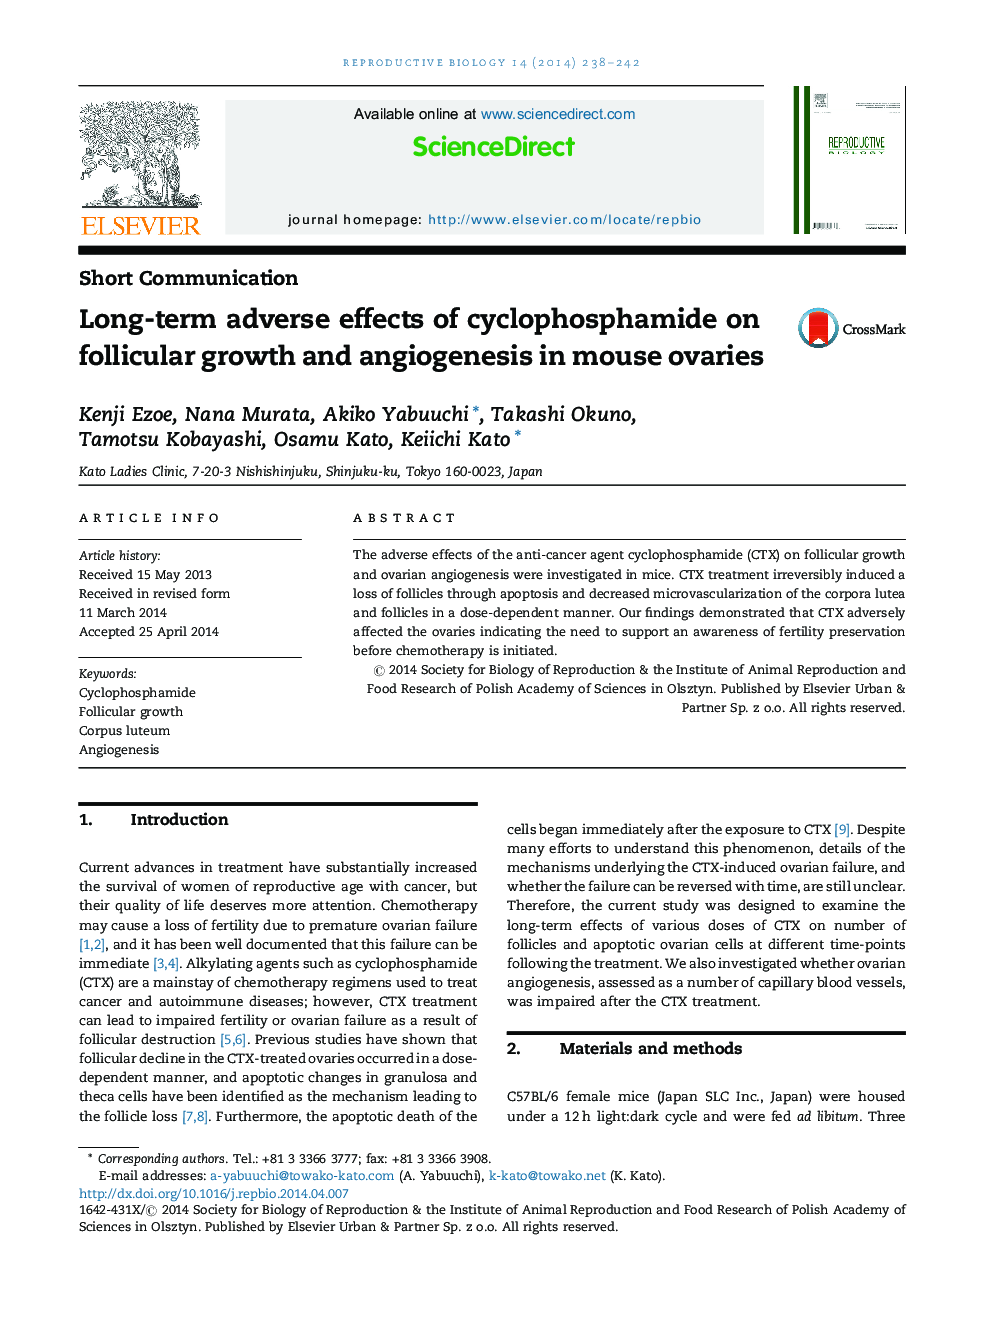 اثرات نامطلوب درازمدت سیکلوفسفامید بر رشد فولیکولها و آنژیوژنز در تخمدان های موش 